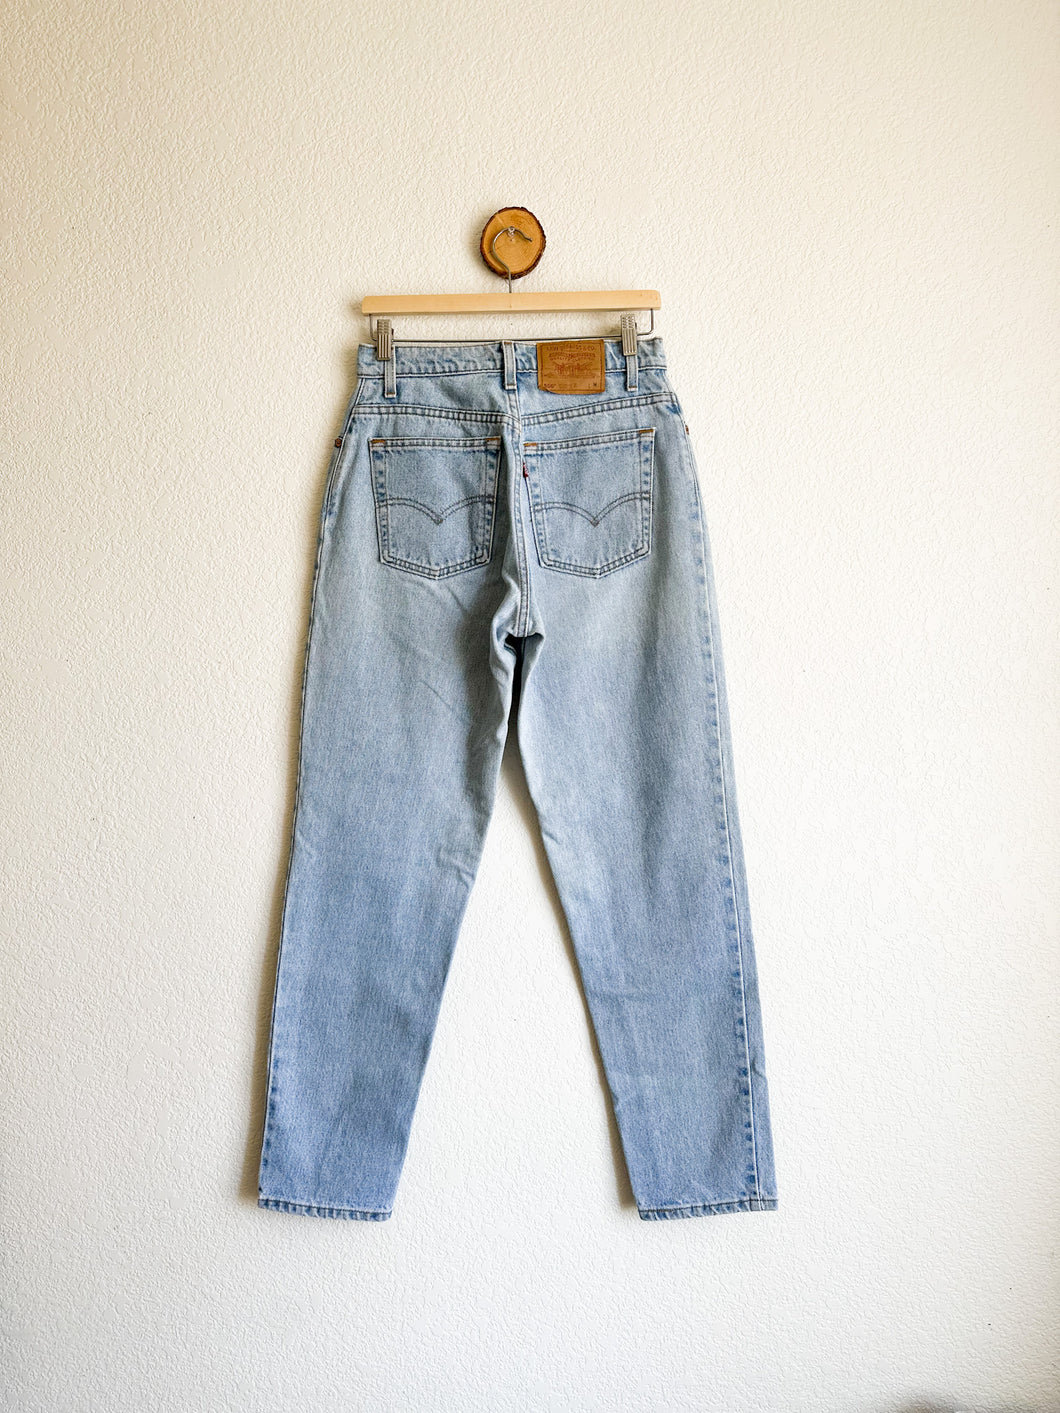 Vintage Levi's 550 Jeans - 29